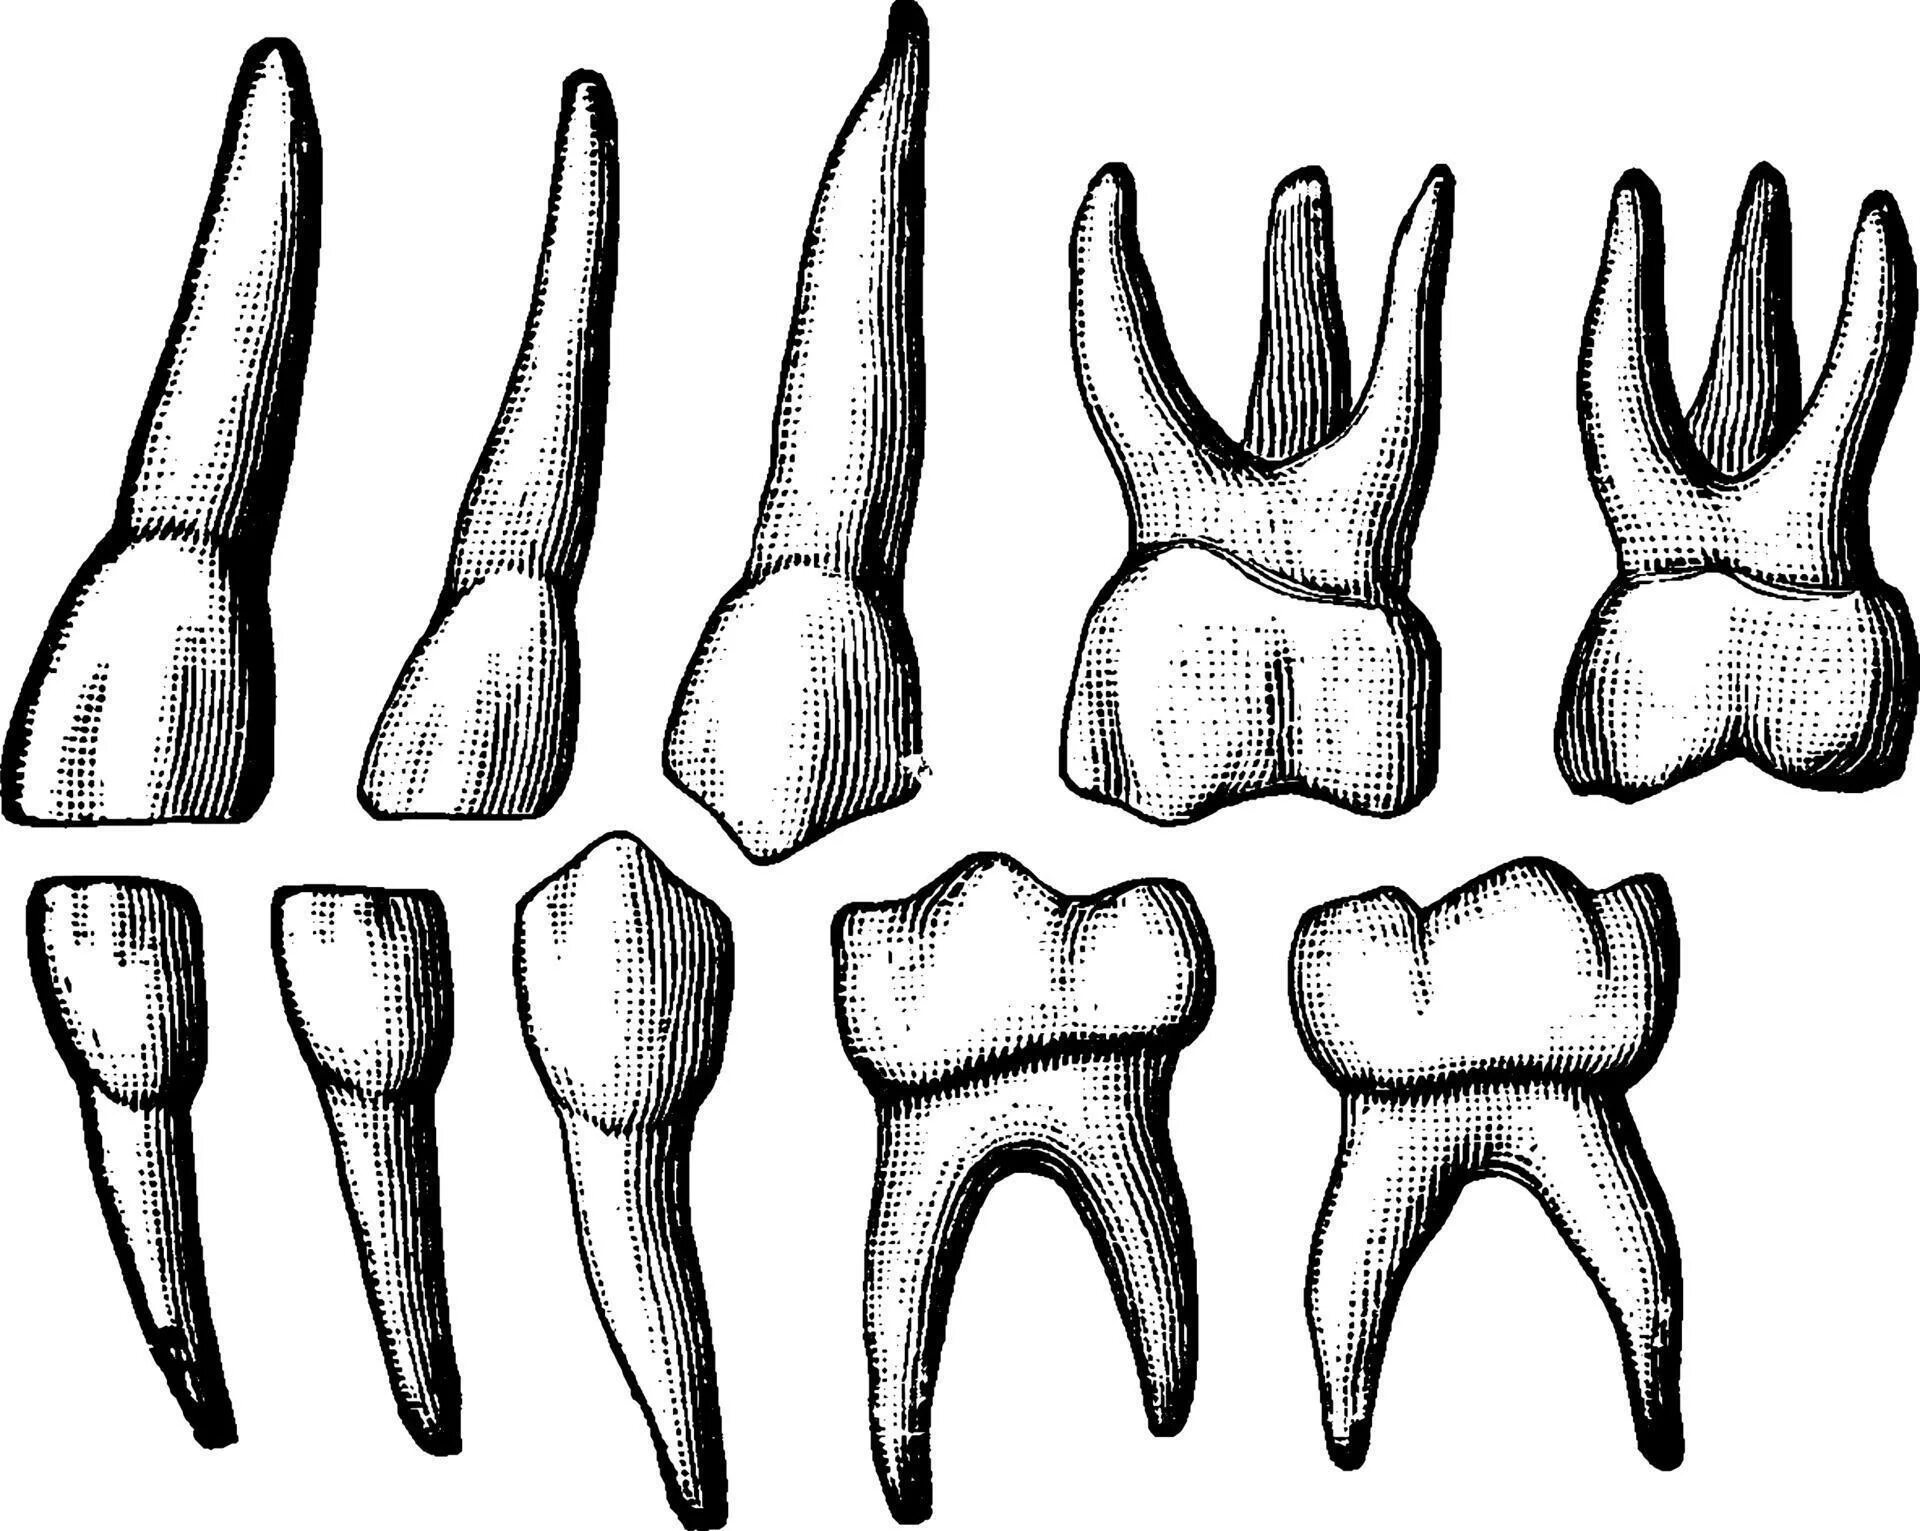 Корень зуба клык